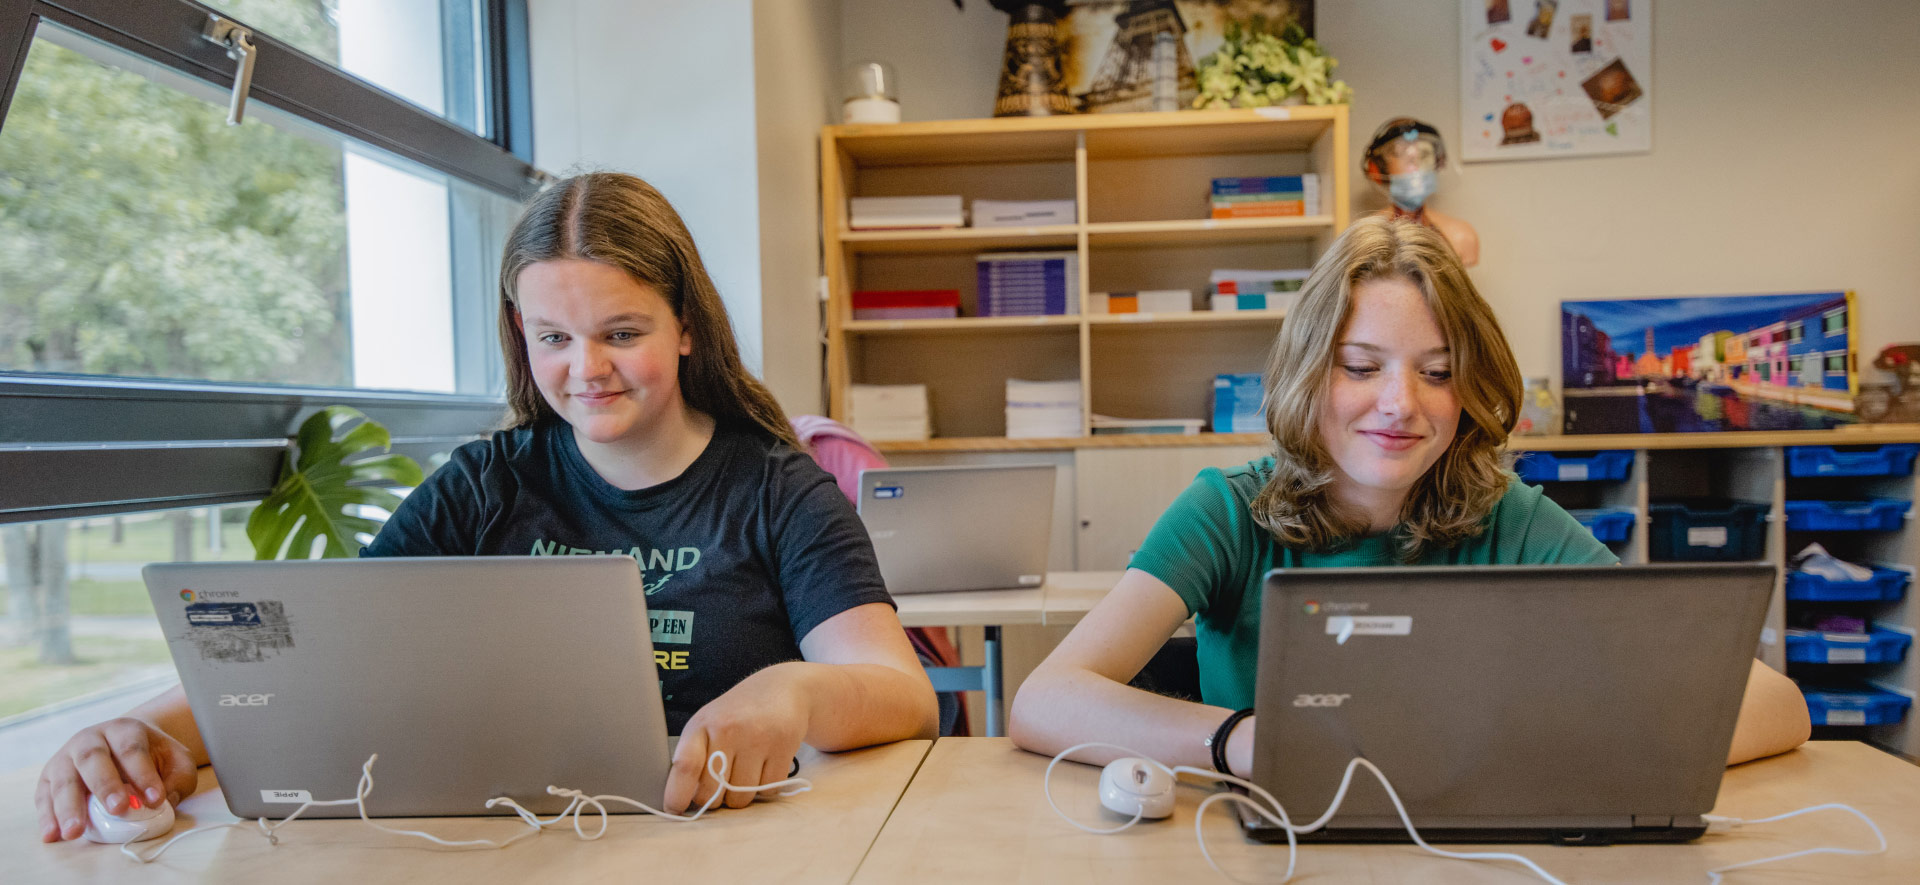 https://www.ubboemmius.nl/wp-content/uploads/2022/09/ubbo-praktijkonderwijs-klas-meisjes-laptops.jpg